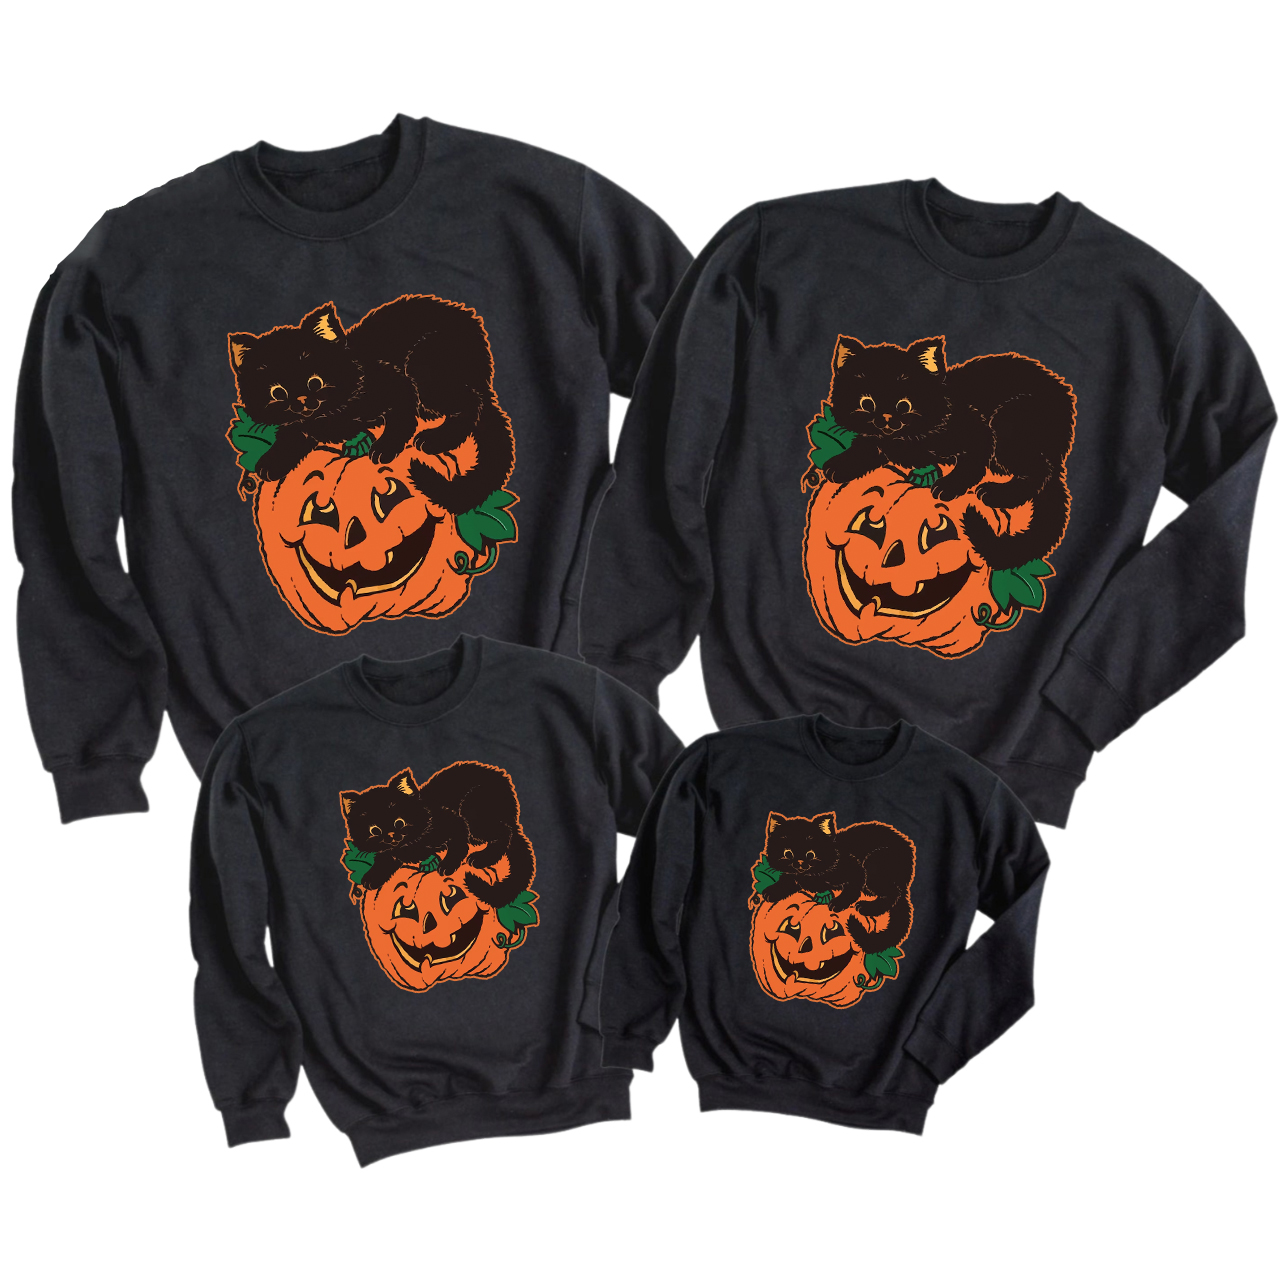 Pumpkin and Cat Halloween Party Sweatshirts